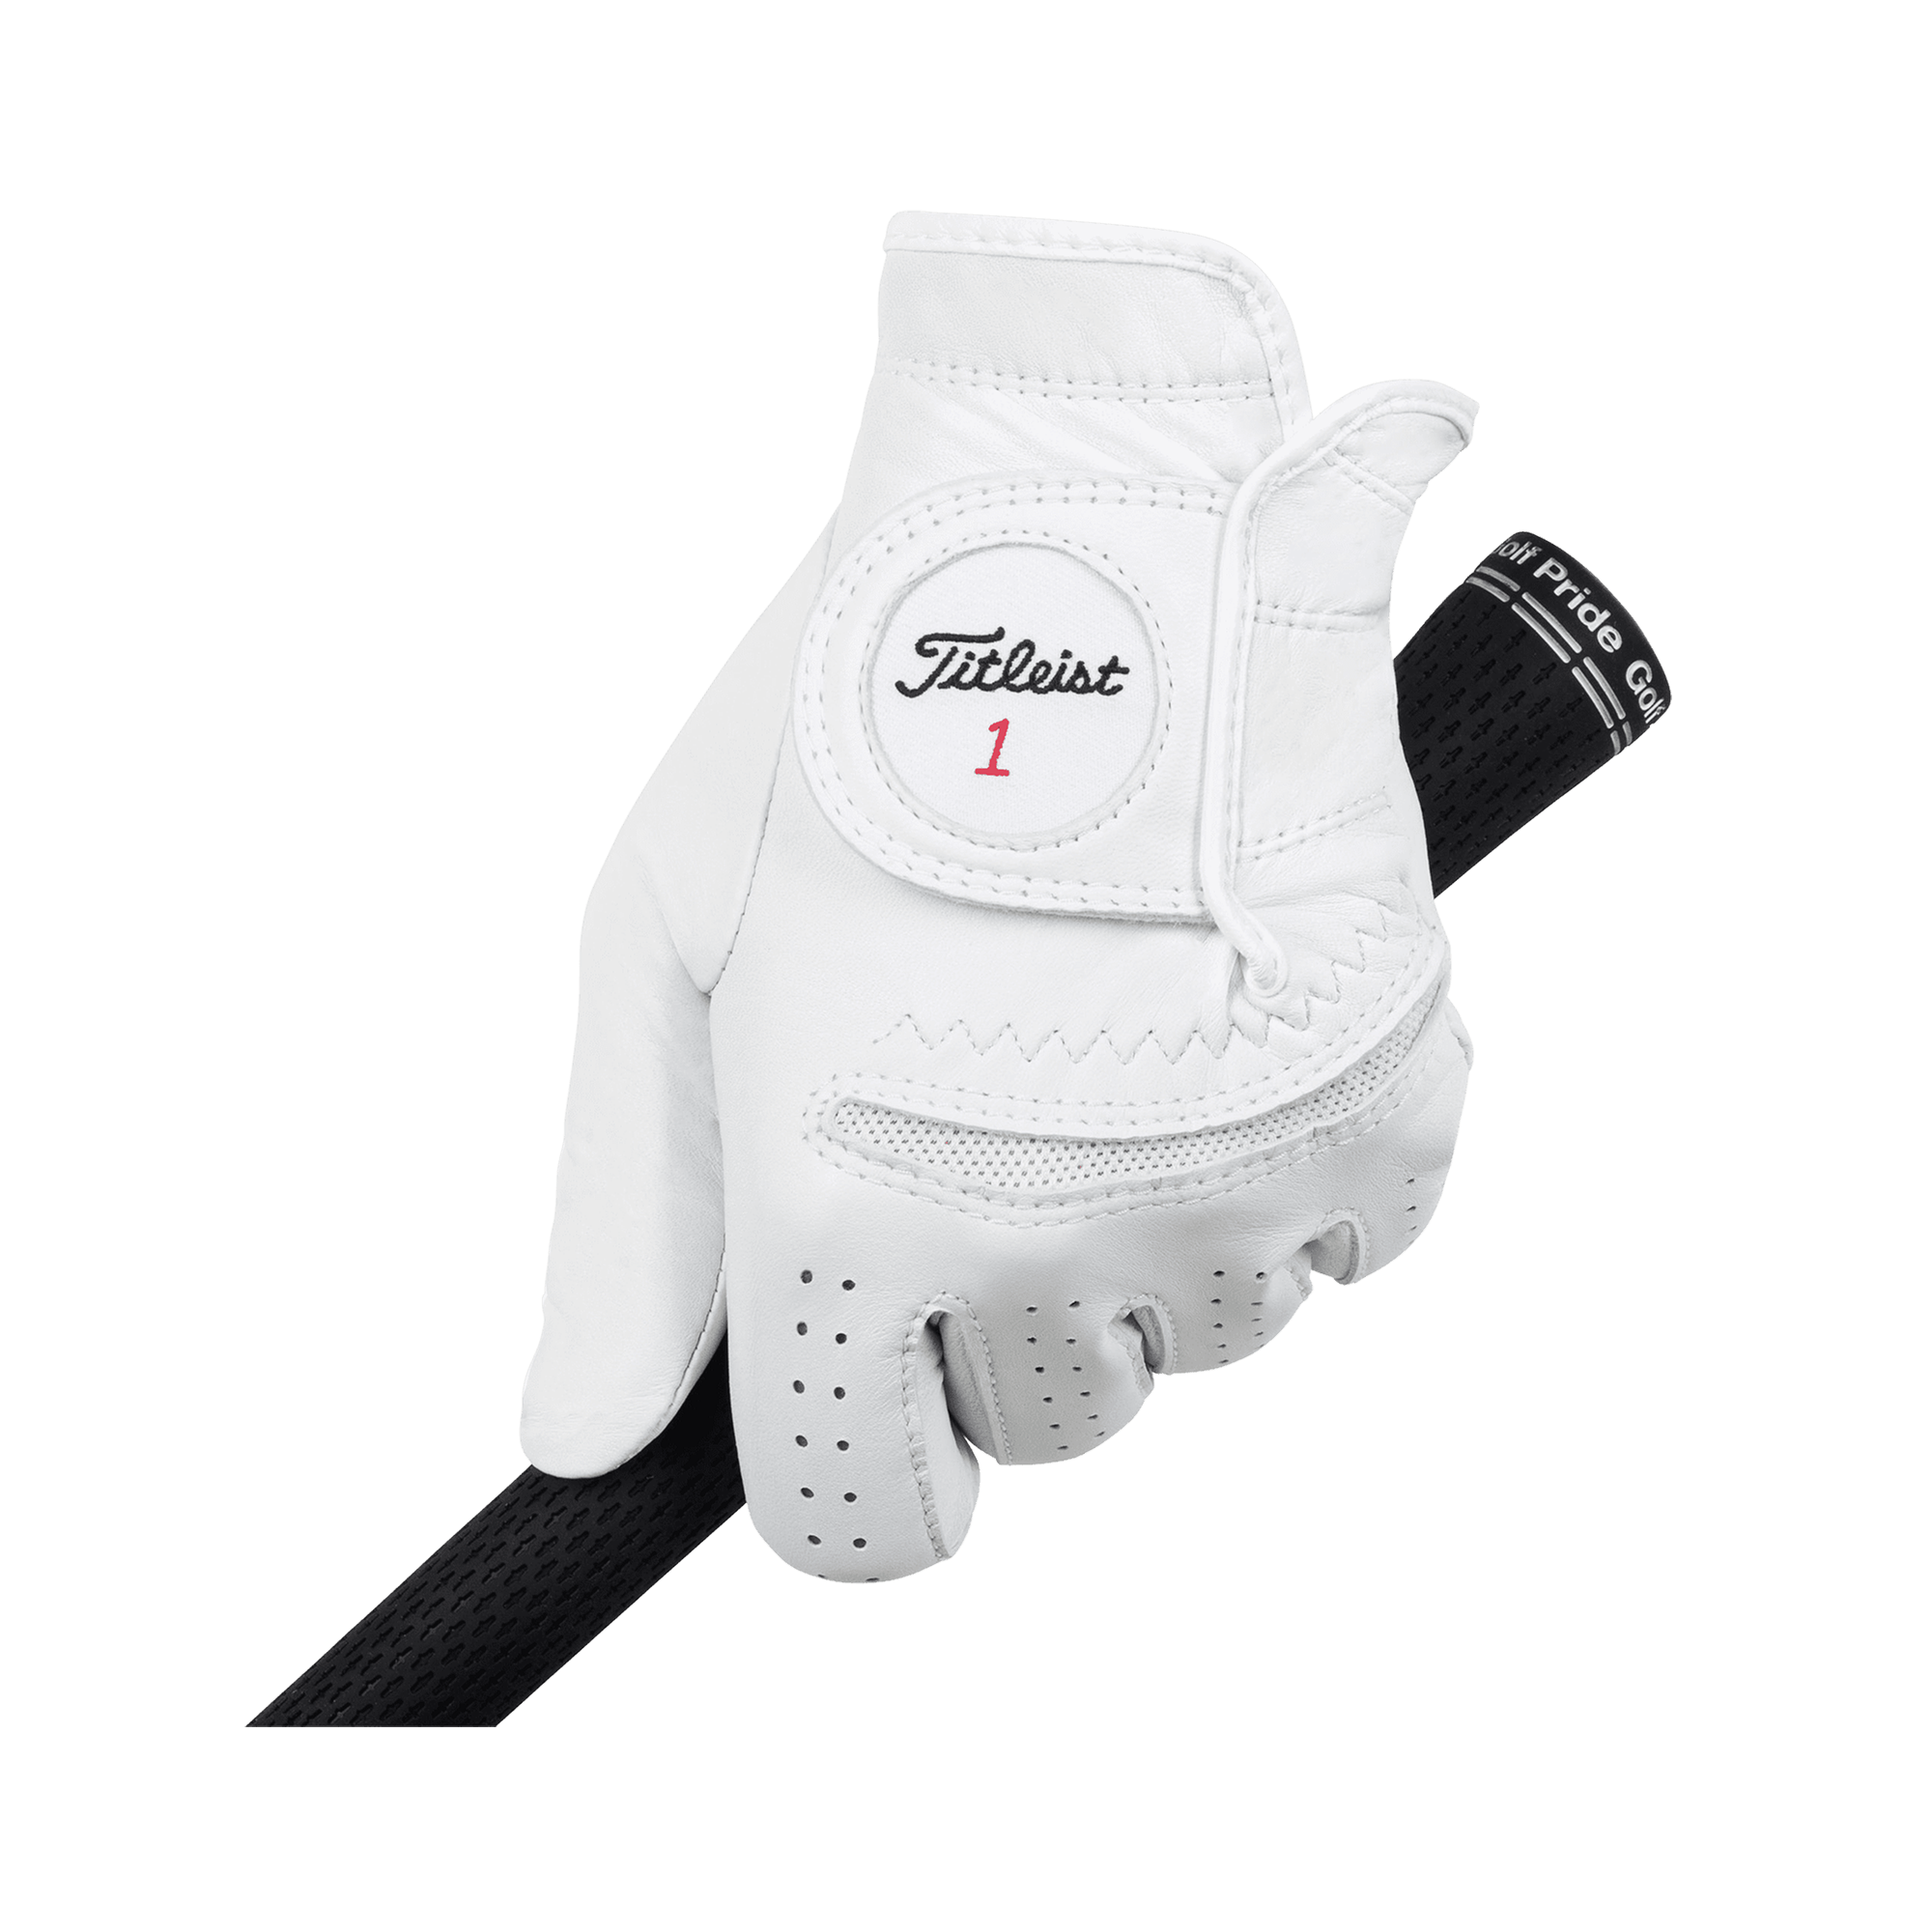 Titleist Men's Perma-Soft Golf Gloves